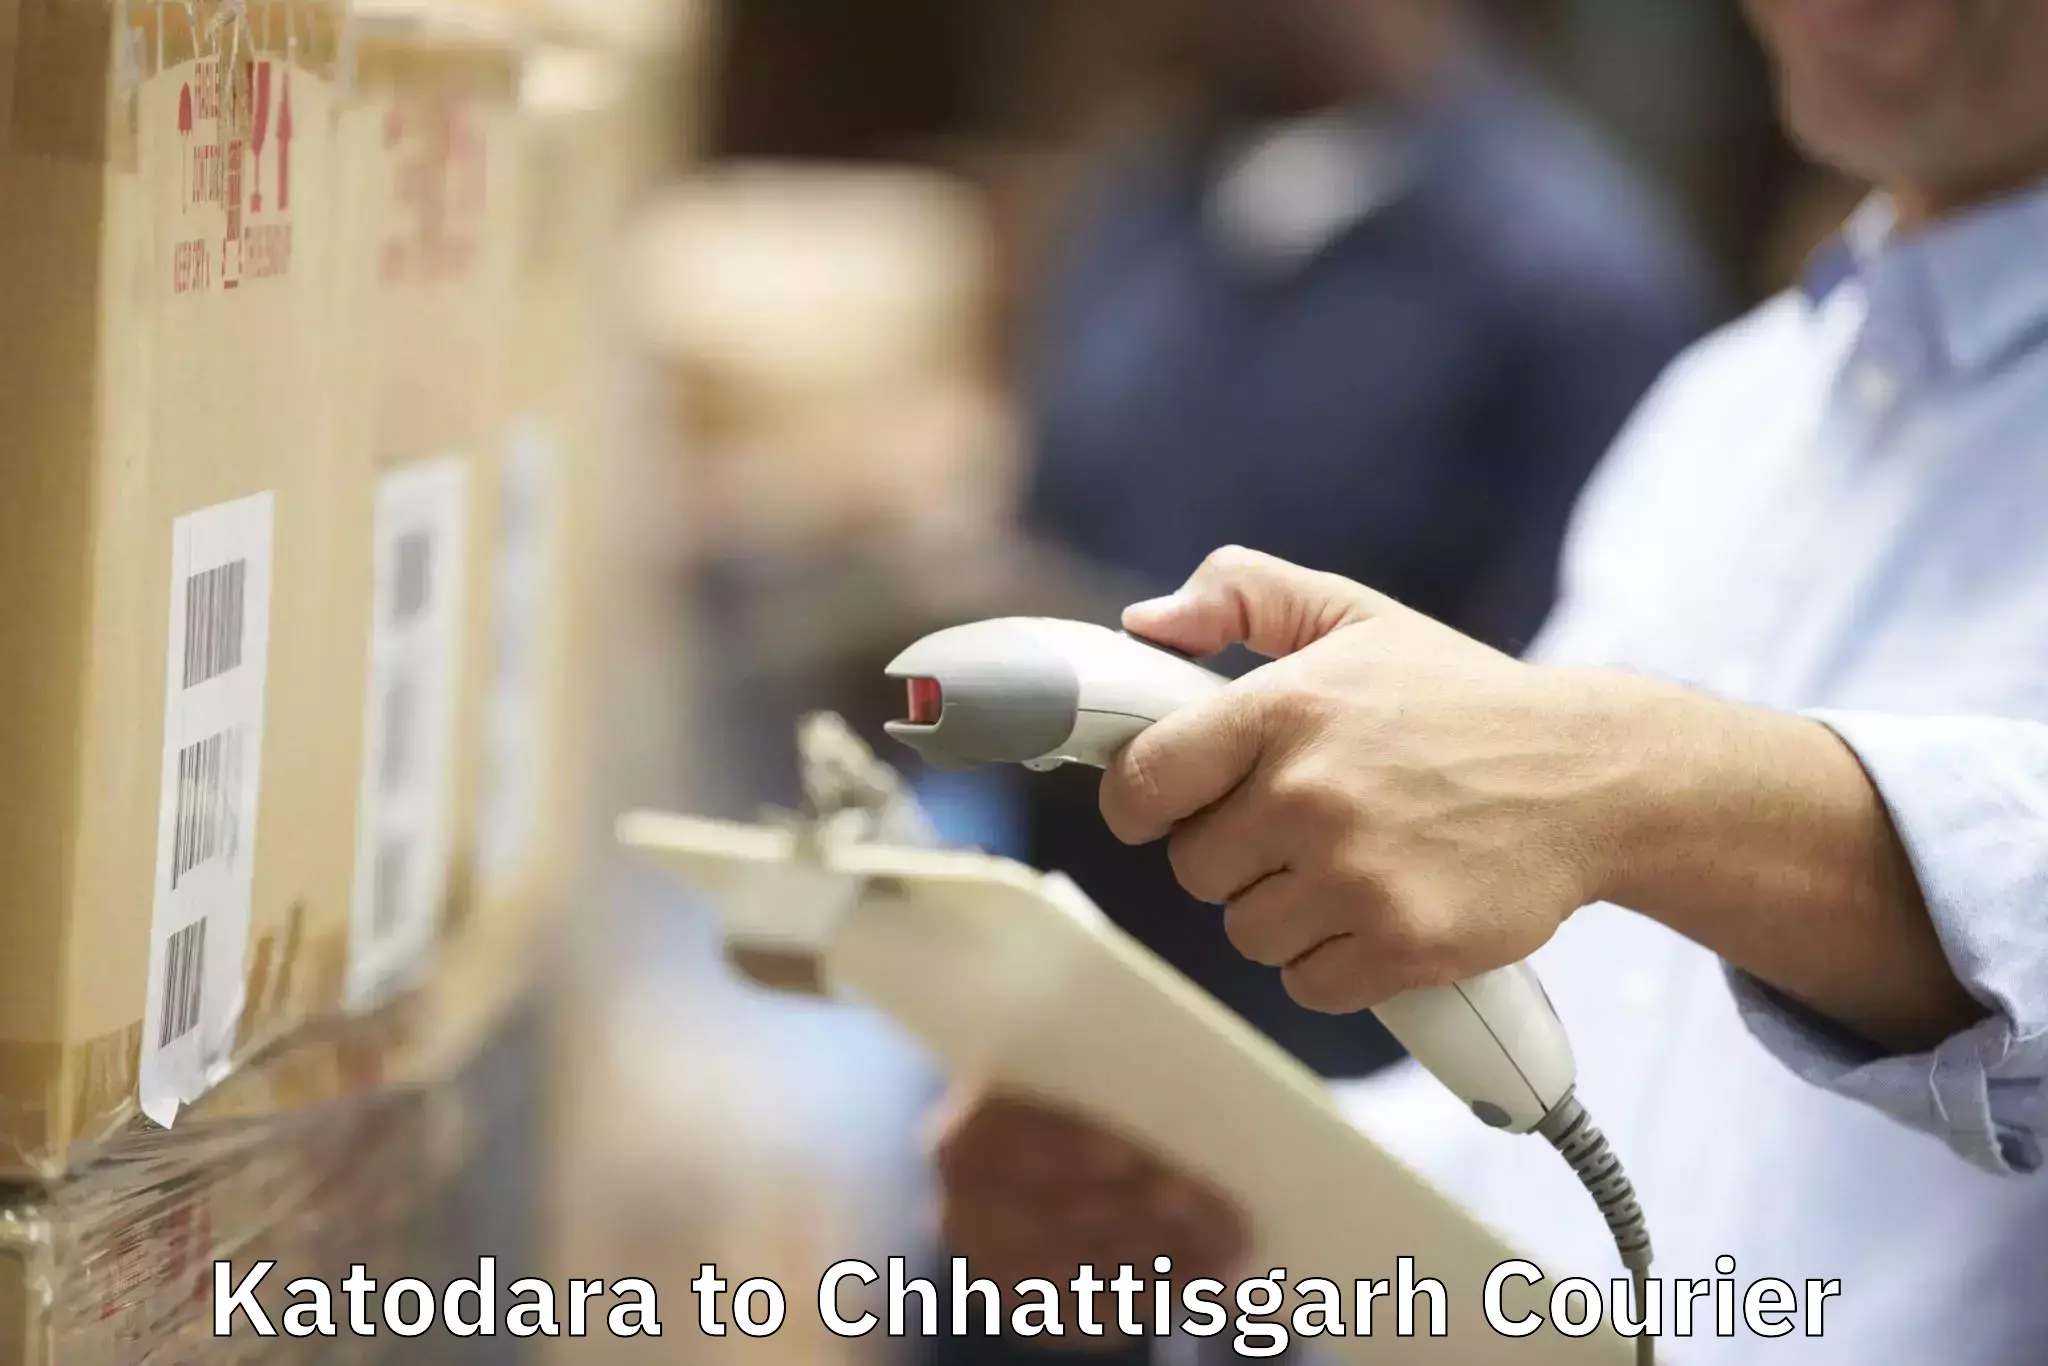 Furniture delivery service Katodara to Chhattisgarh